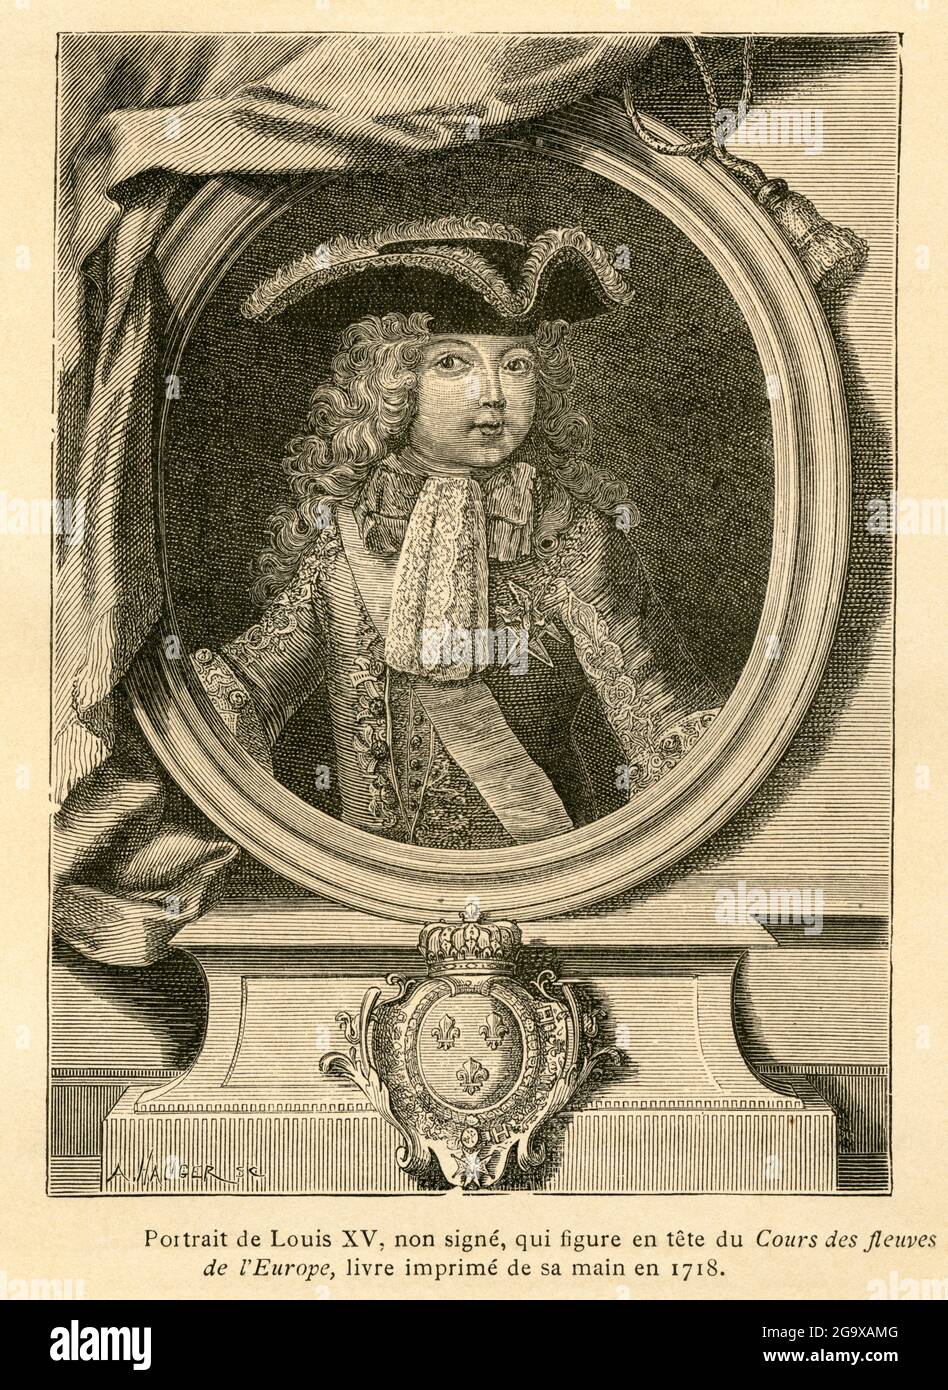 Luigi XV di Francia, ritratto, immagine di: 'L'Ancienne France, le Livre', di M. P. Louisy, IL DIRITTO D'AUTORE DELL'ARTISTA NON DEVE ESSERE CANCELLATO Foto Stock